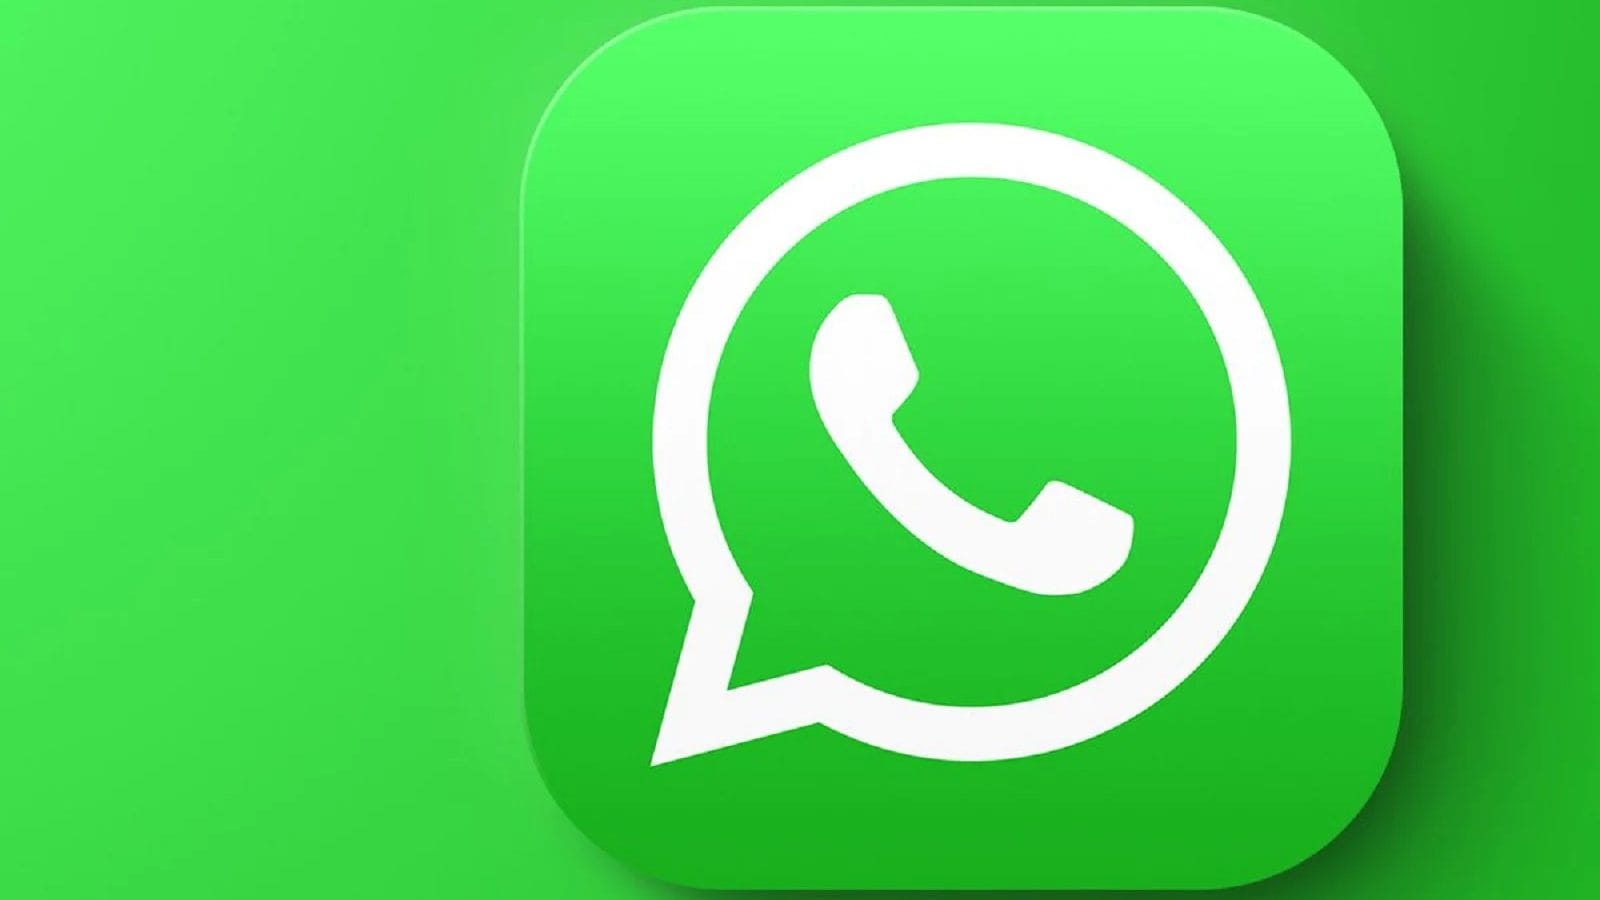 ইন্টারনেট ছাড়াই এবার ব্যবহার করা যাবে WhatsApp, কিন্তু কীভাবে? শিখে নিন